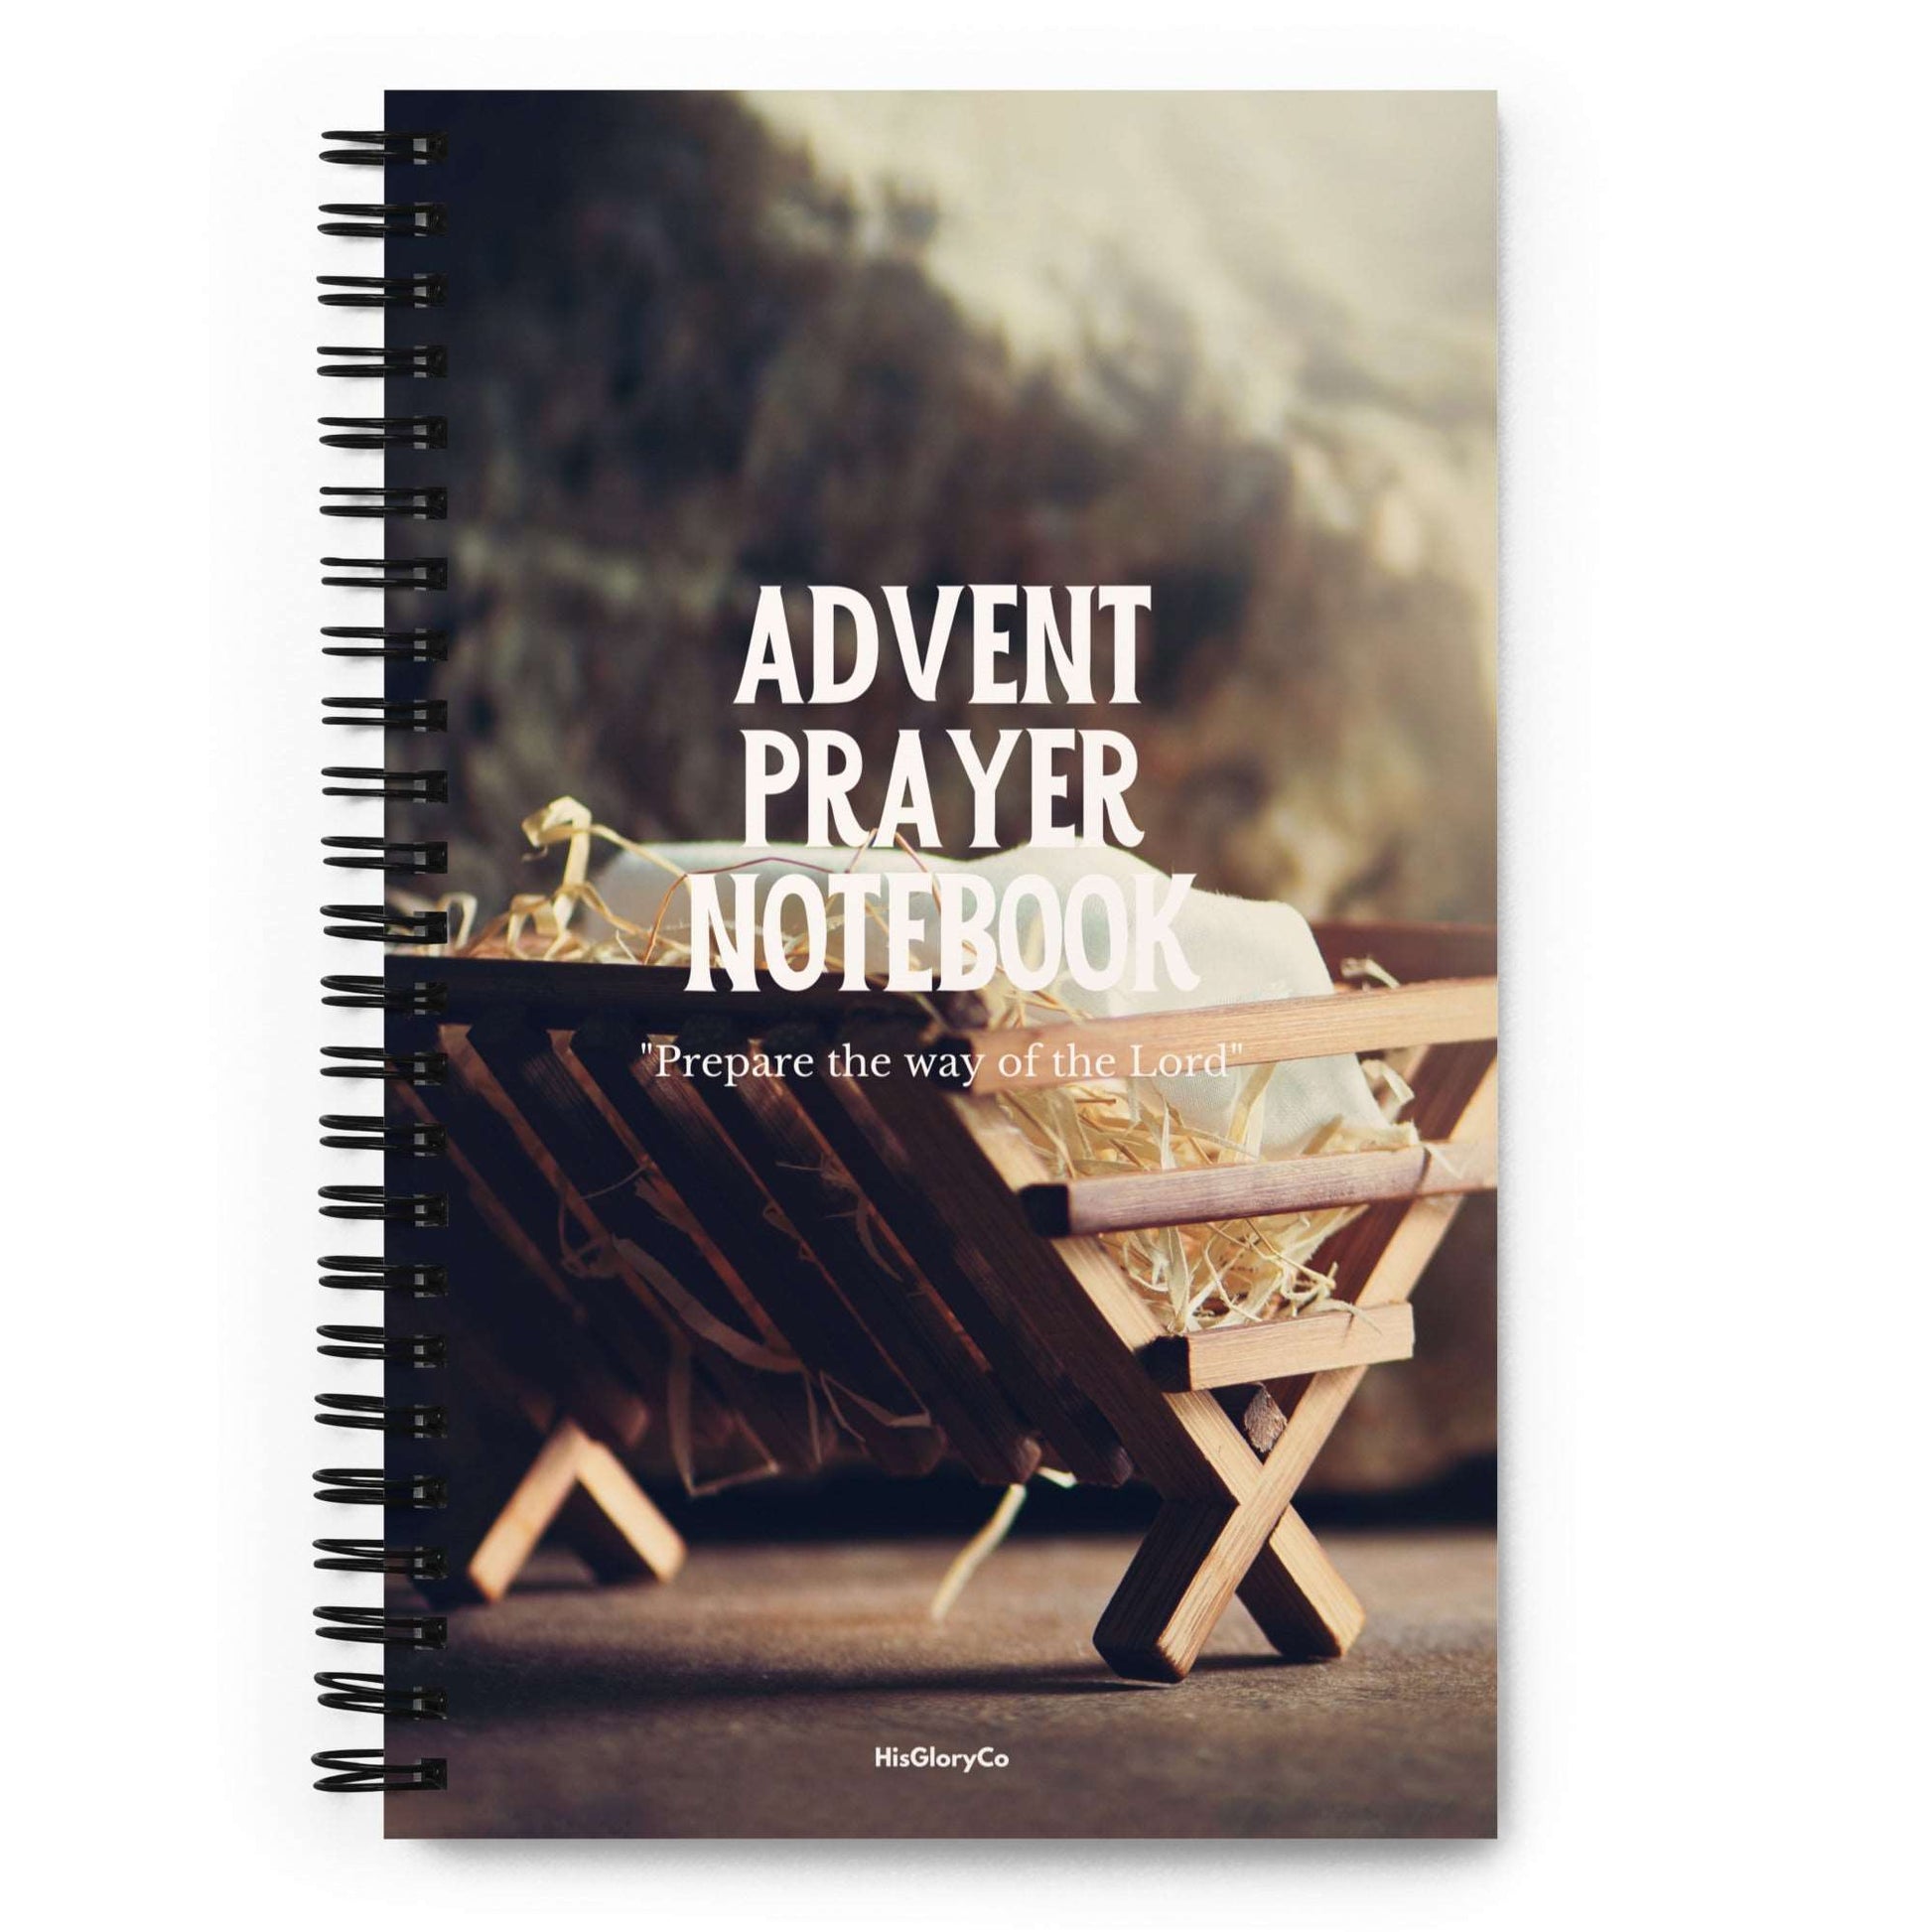 Advent Prayer Journal - Empty Manger - Spiral notebook